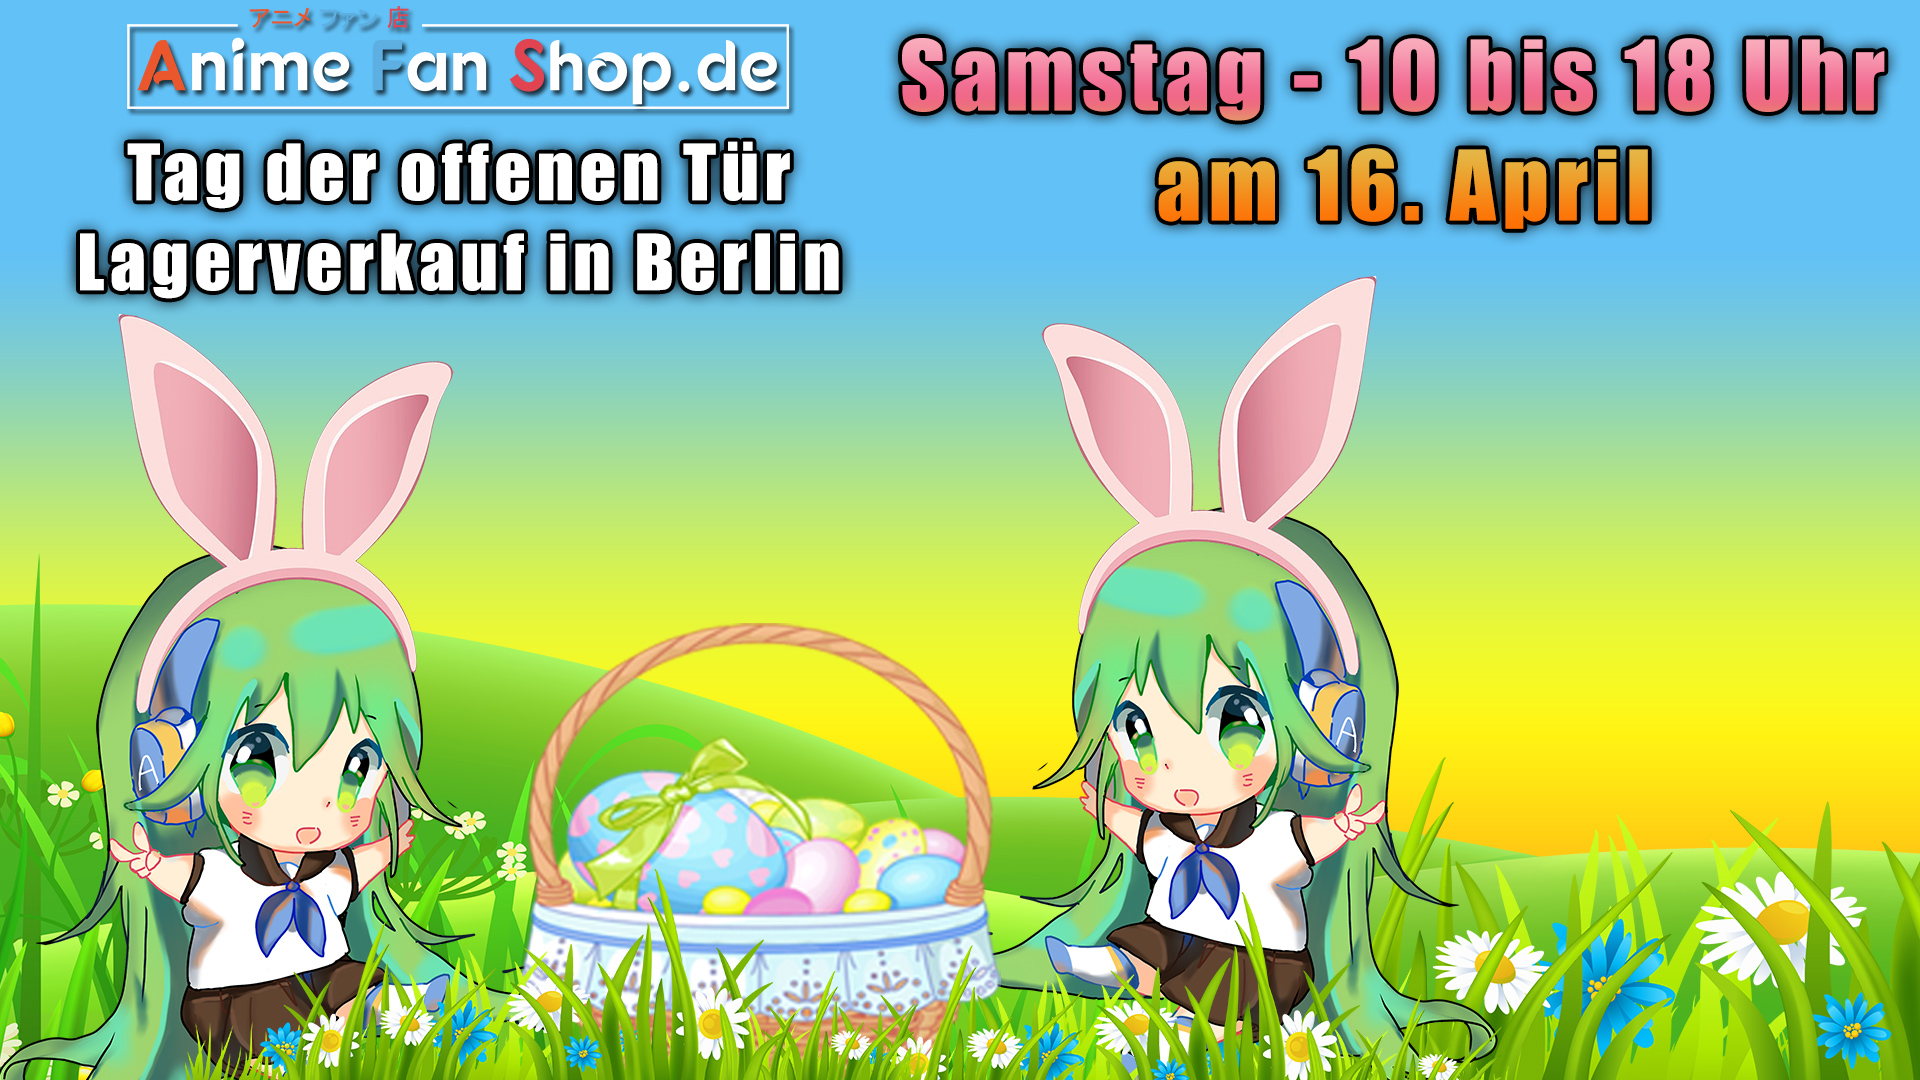 Oster-Shoppen am Samstag den 16. April  in Berlin beim Lagerverkauf von AnimeFanShop.de